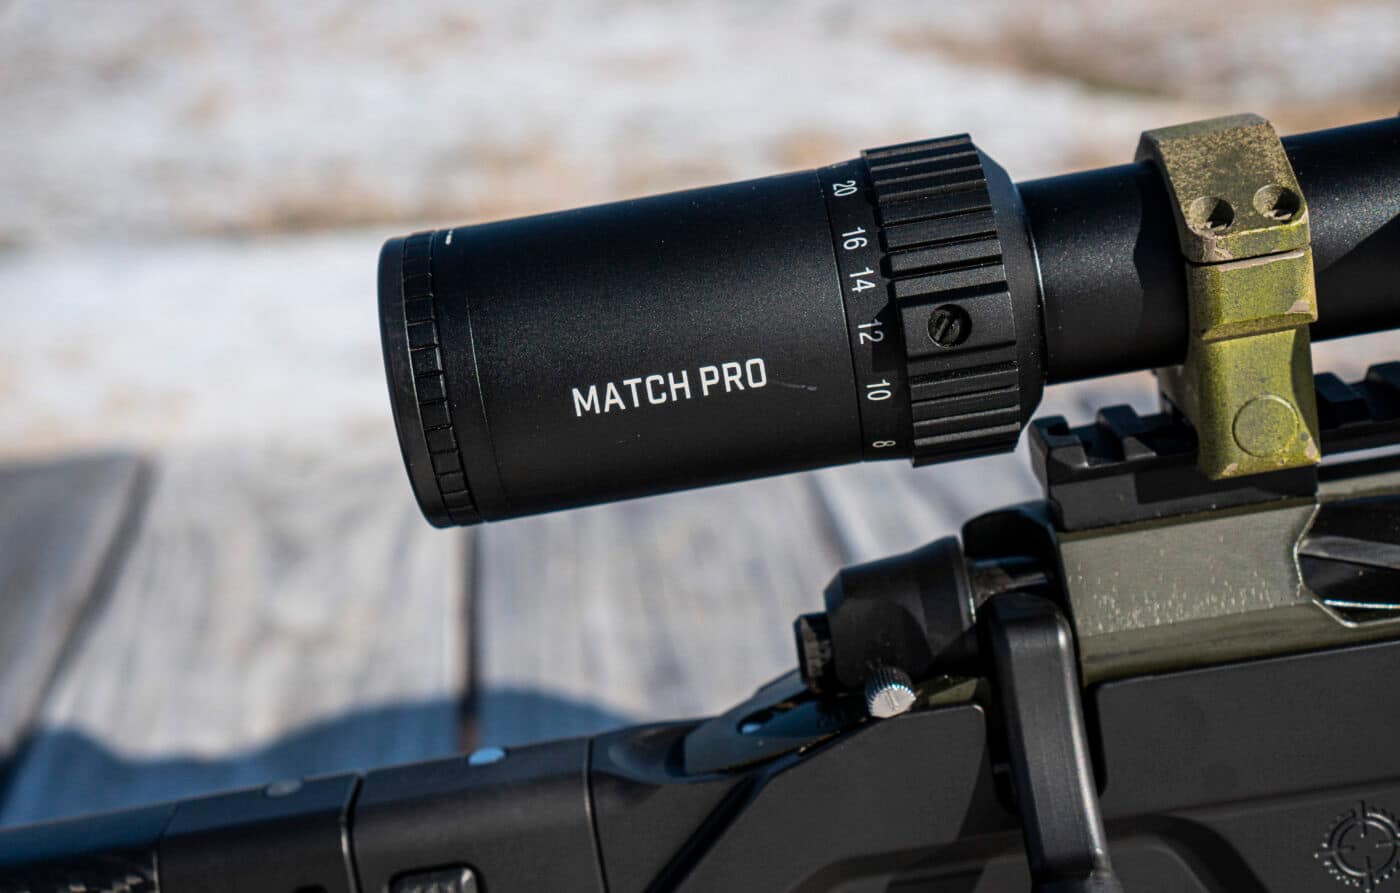 Bushnell Match Pro scope mounted to rifle